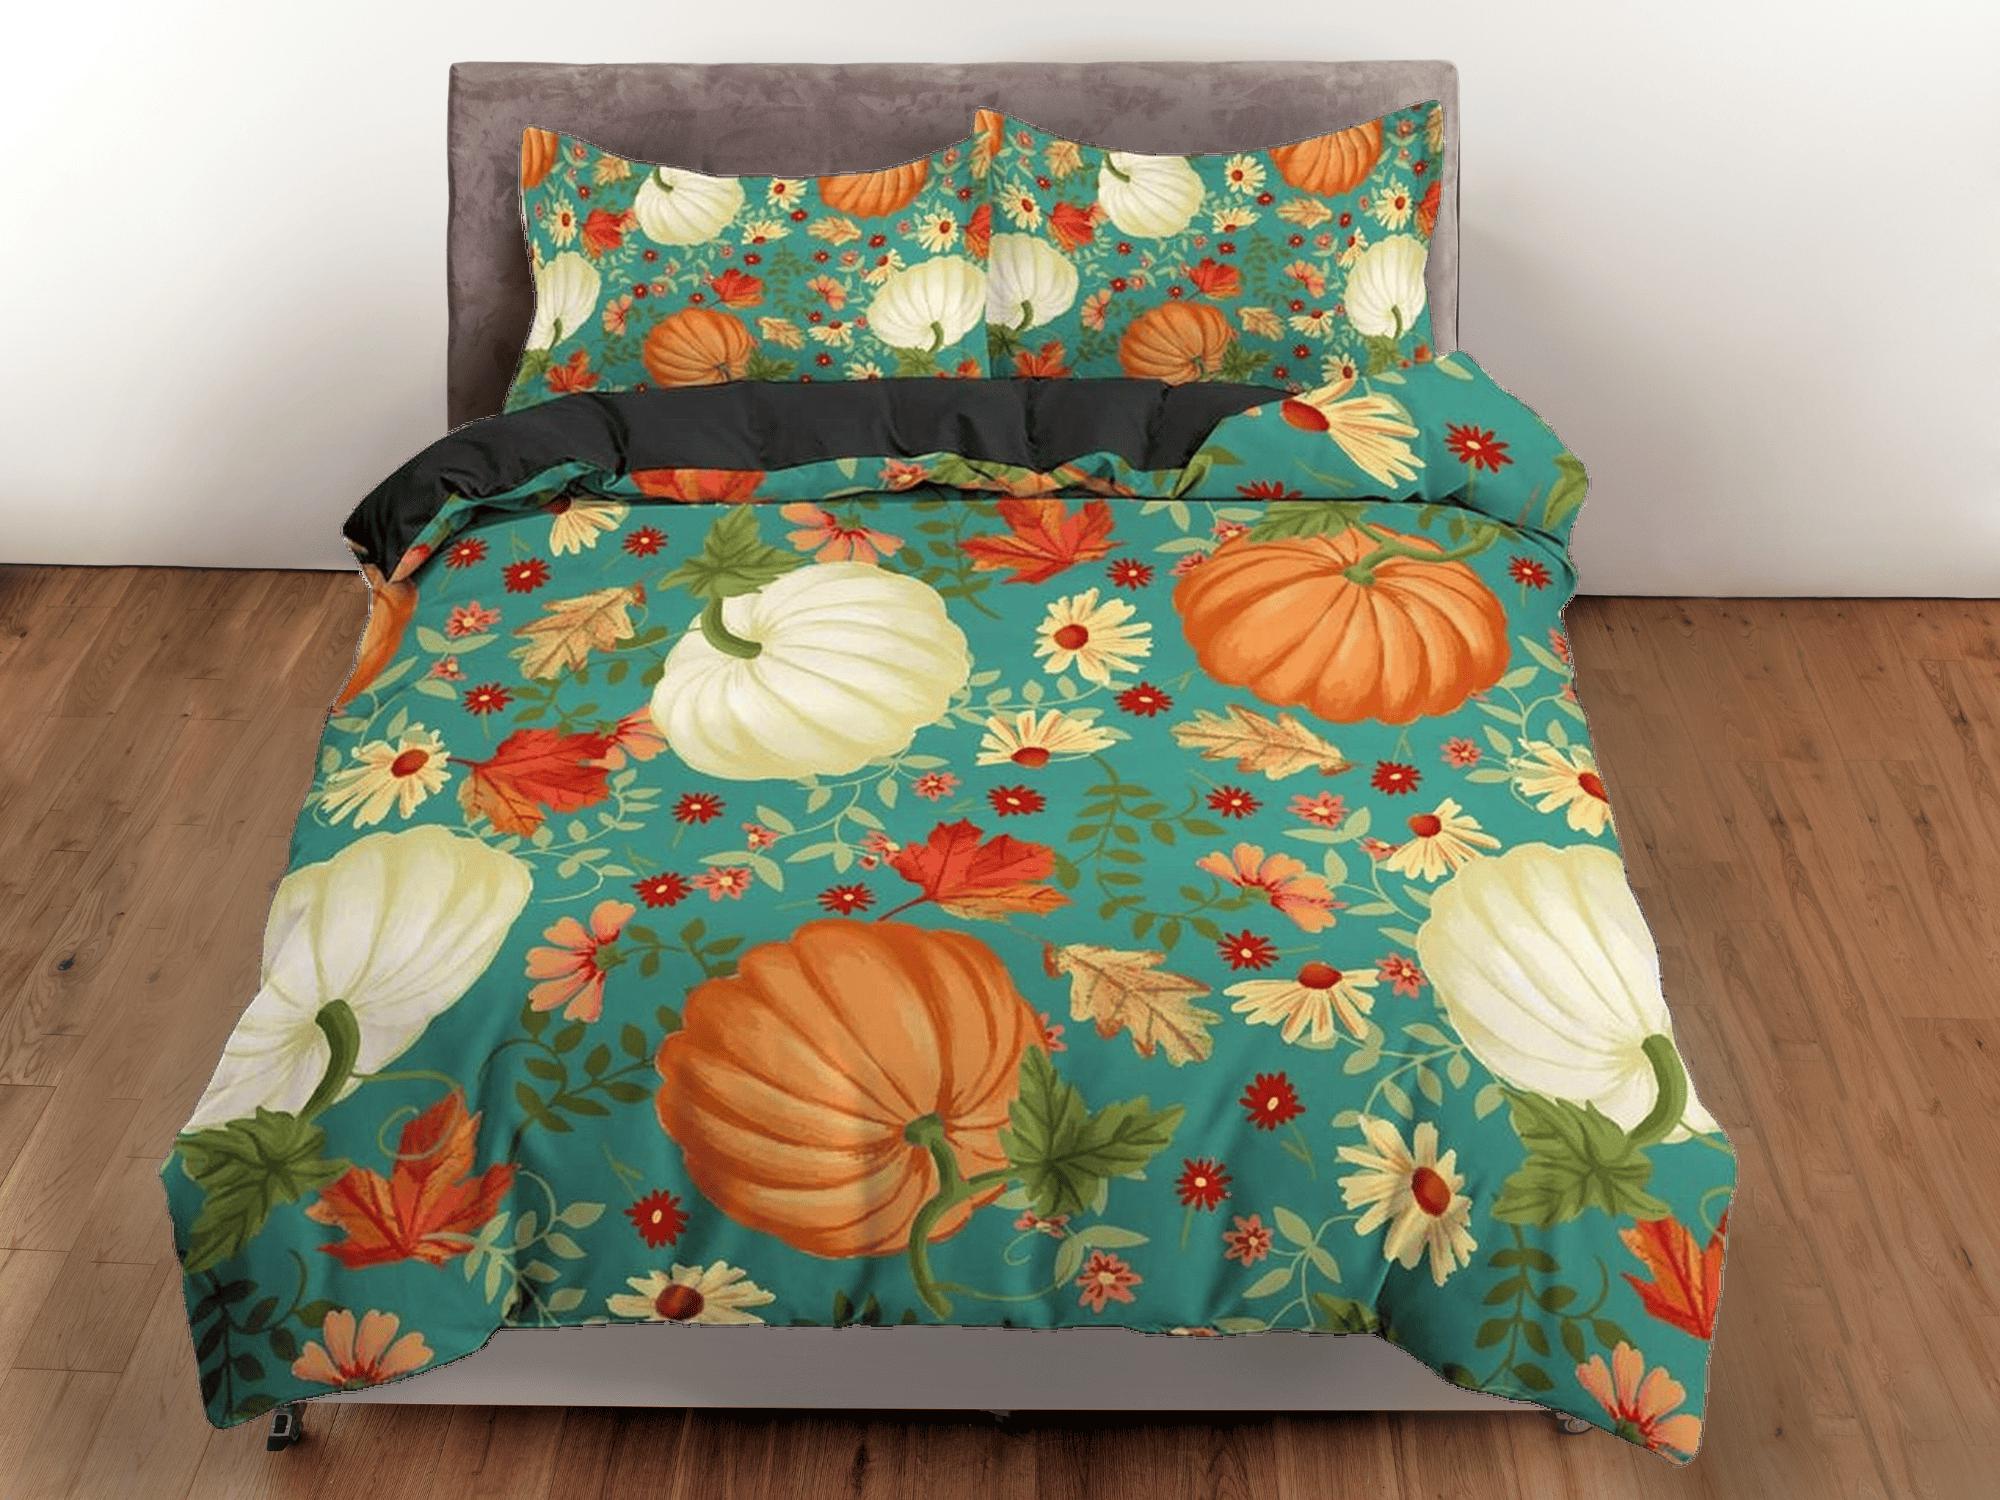 daintyduvet Vintage halloween full size bedding & pillowcase, retro autumn duvet cover set dorm bedding, shabby chic bedding, halloween decor gift